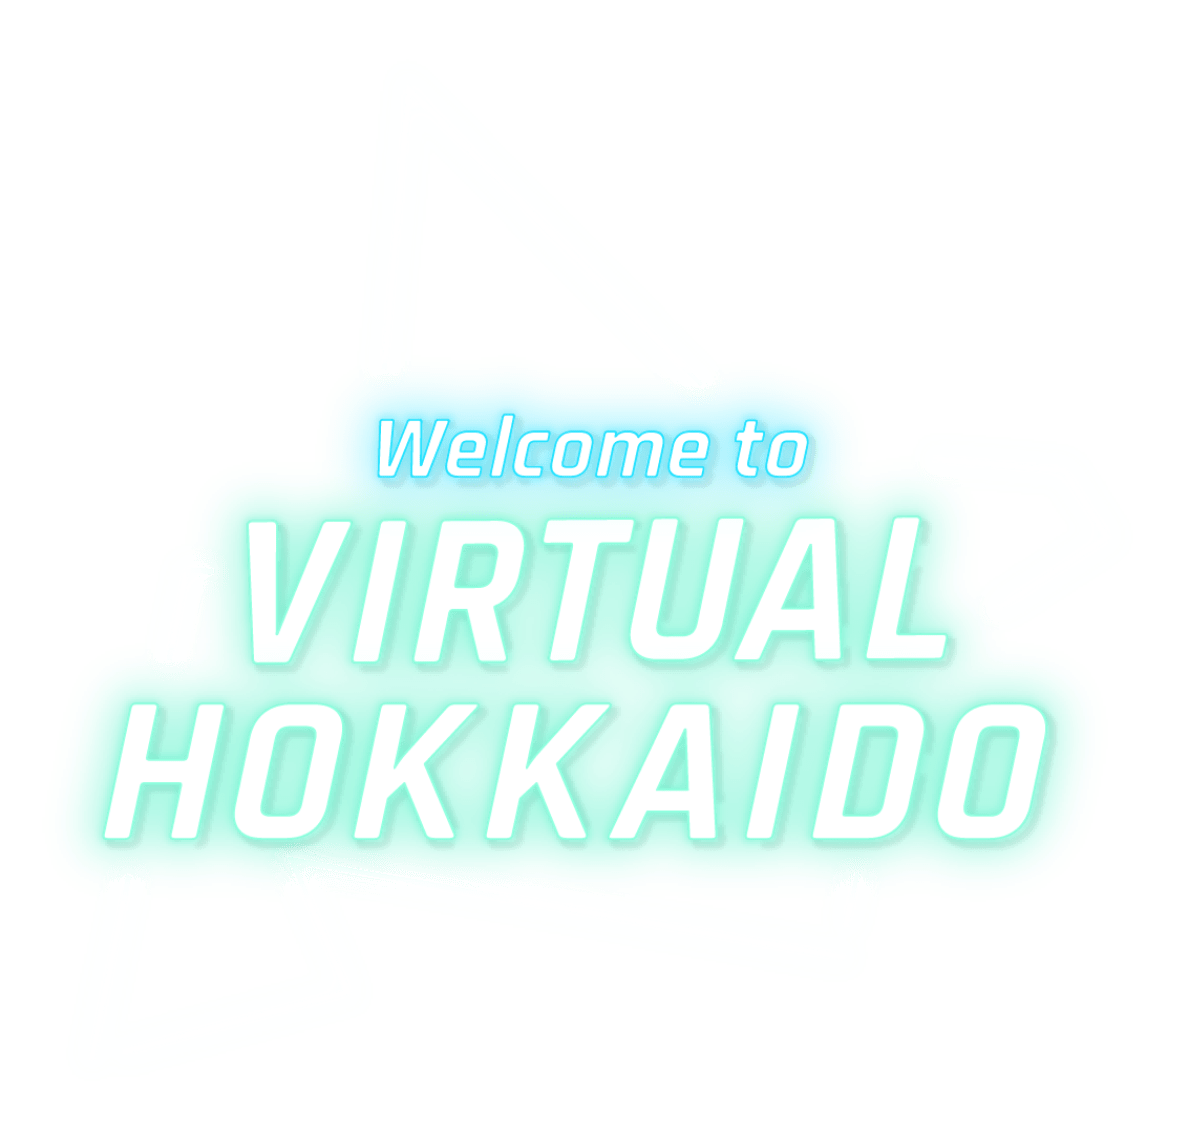 Welcome to VIRTUAL HOKKAIDO